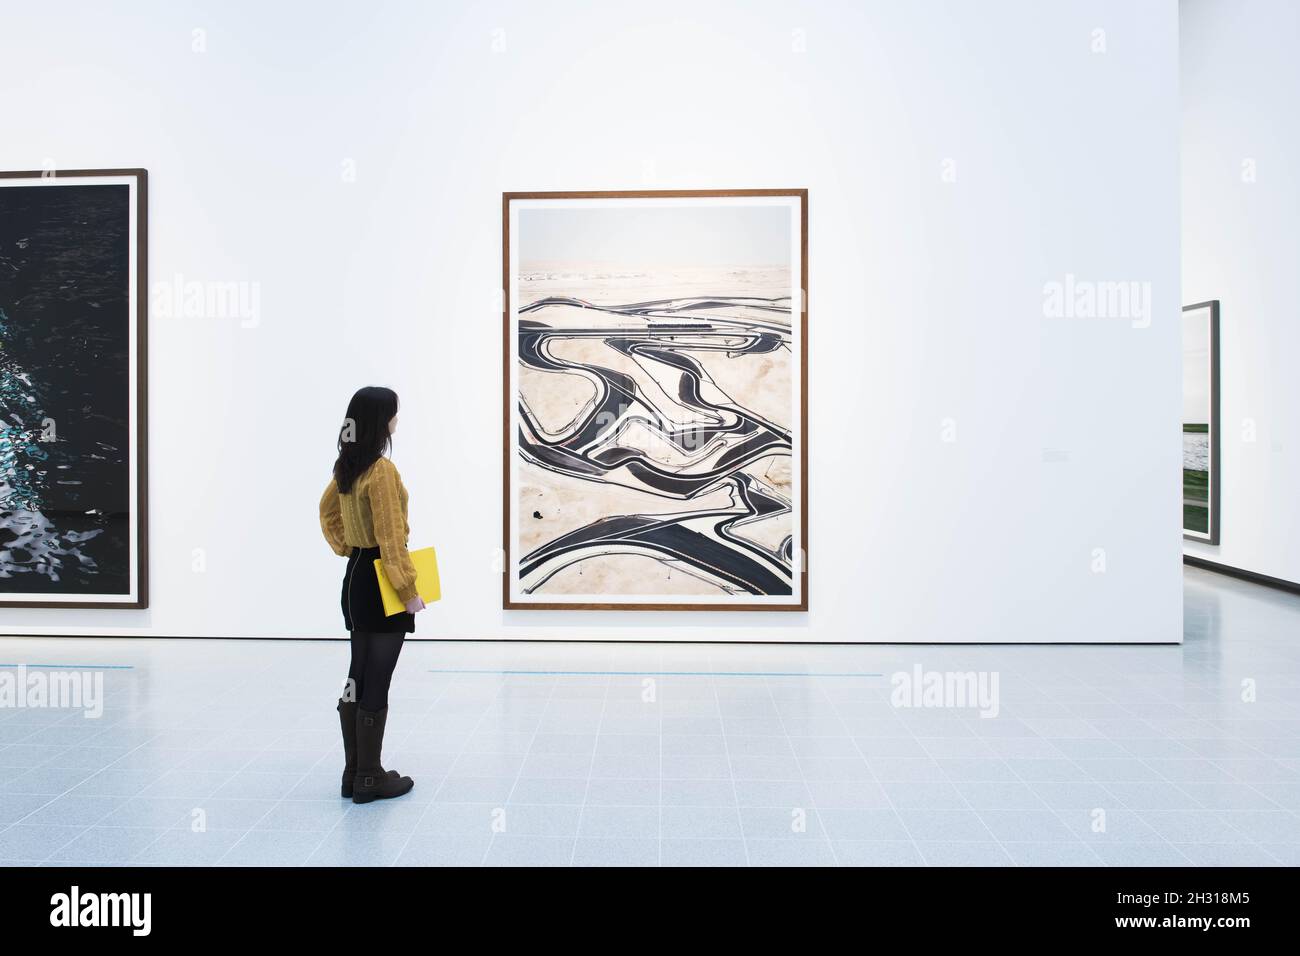 Bahrain i di Andreas Gursky in mostra alla retrospettiva di Andreas Gursky presso la Hayward Gallery di Londra. Data foto: Mercoledì 24 gennaio 2018. Il credito fotografico dovrebbe essere: David Jensen/ EMPICS Entertainment Foto Stock